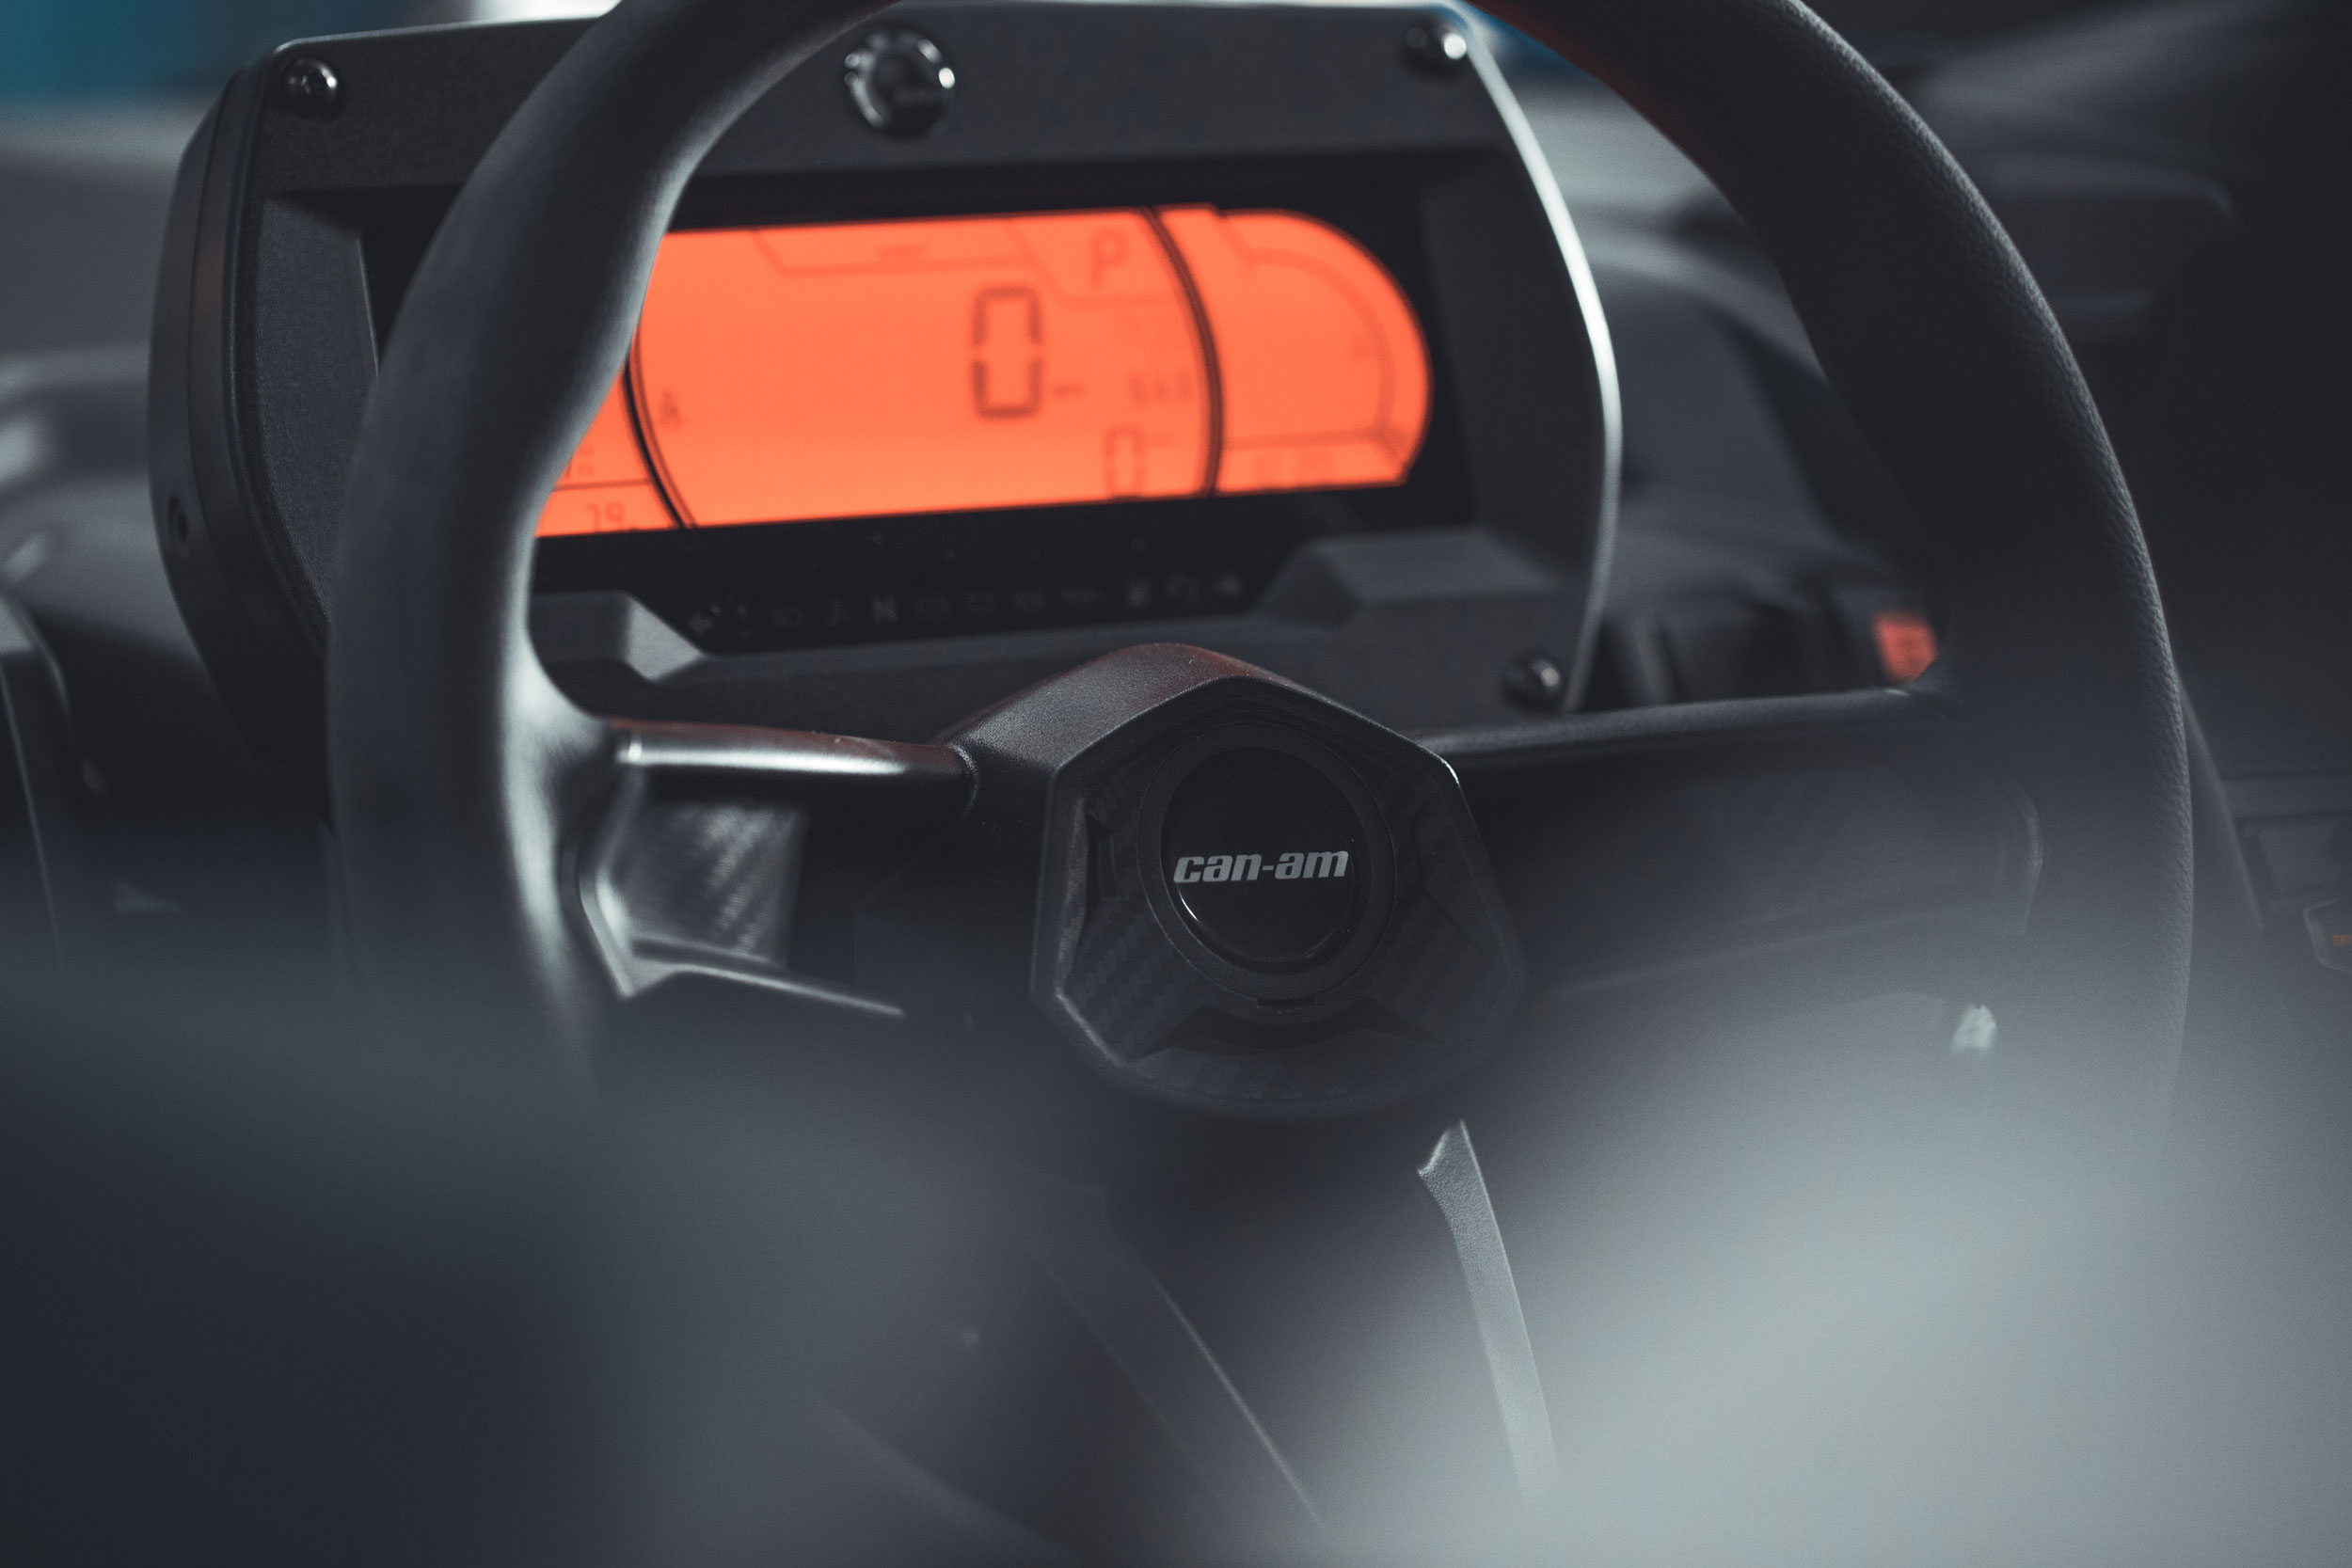 Can-Am Maverick X3 gauge display and interior comfort